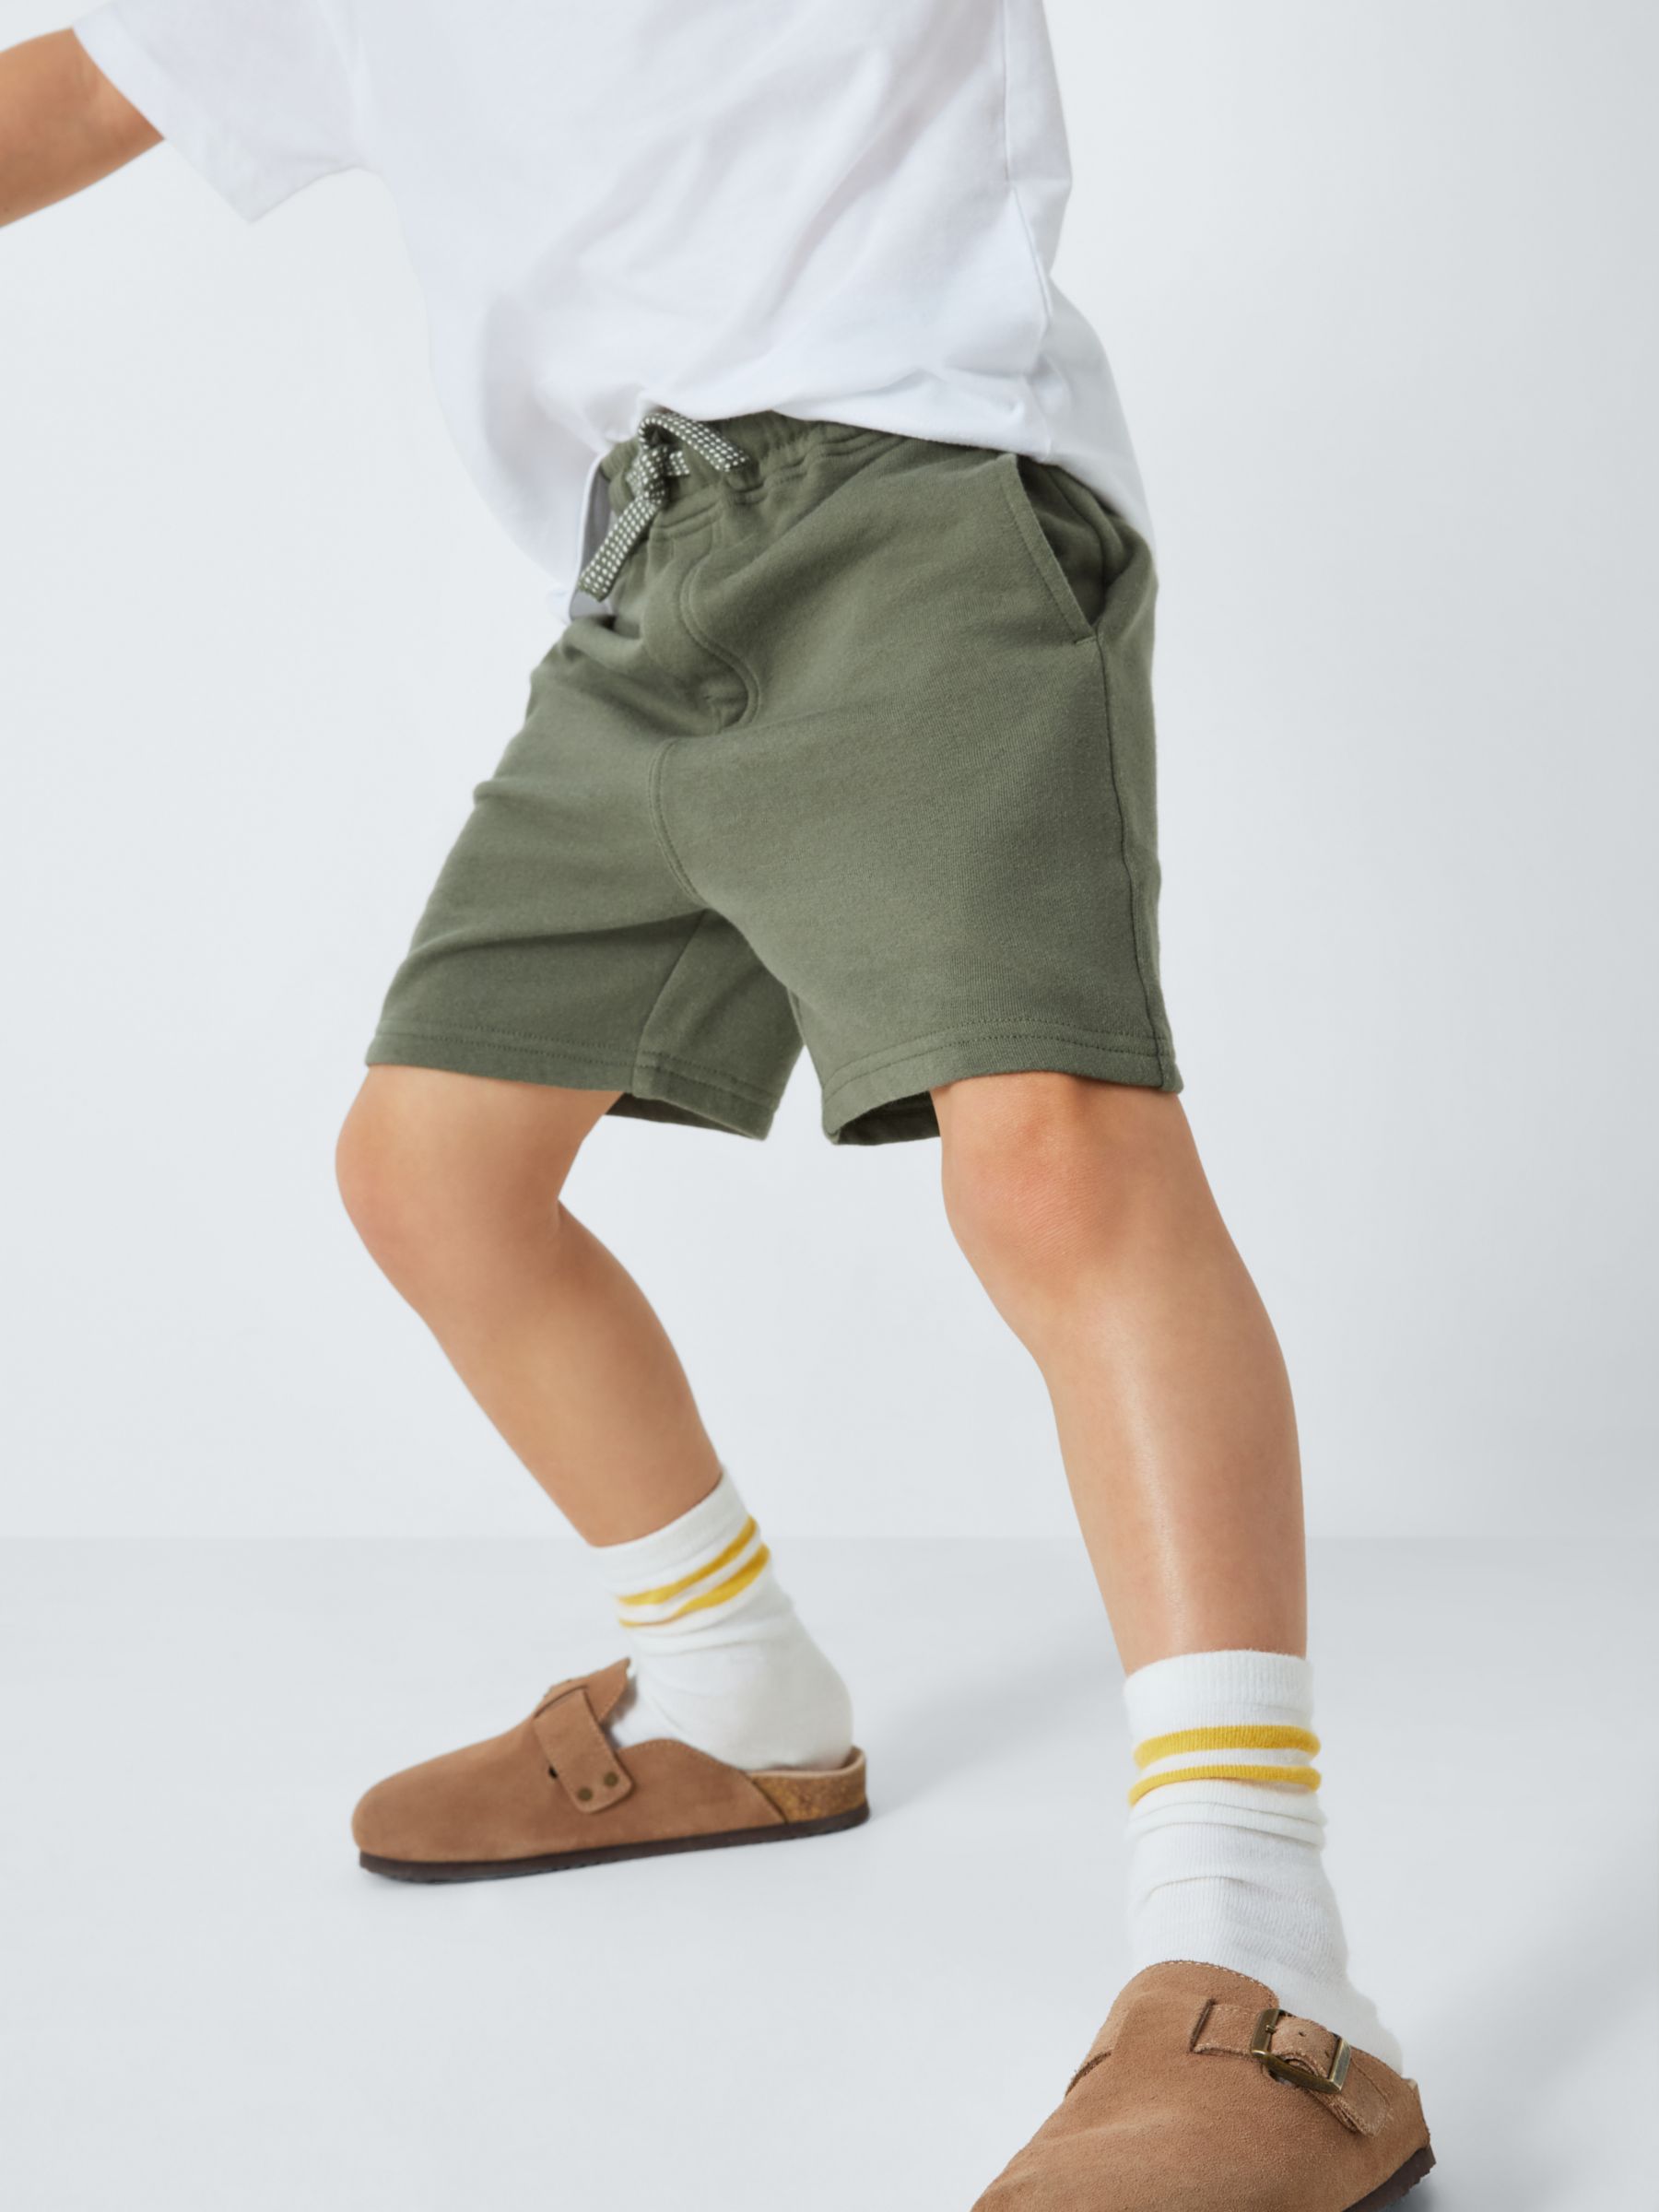 John Lewis Kids' Plain Jogger Shorts, Pack of 2, Blue/Khaki, 7 years